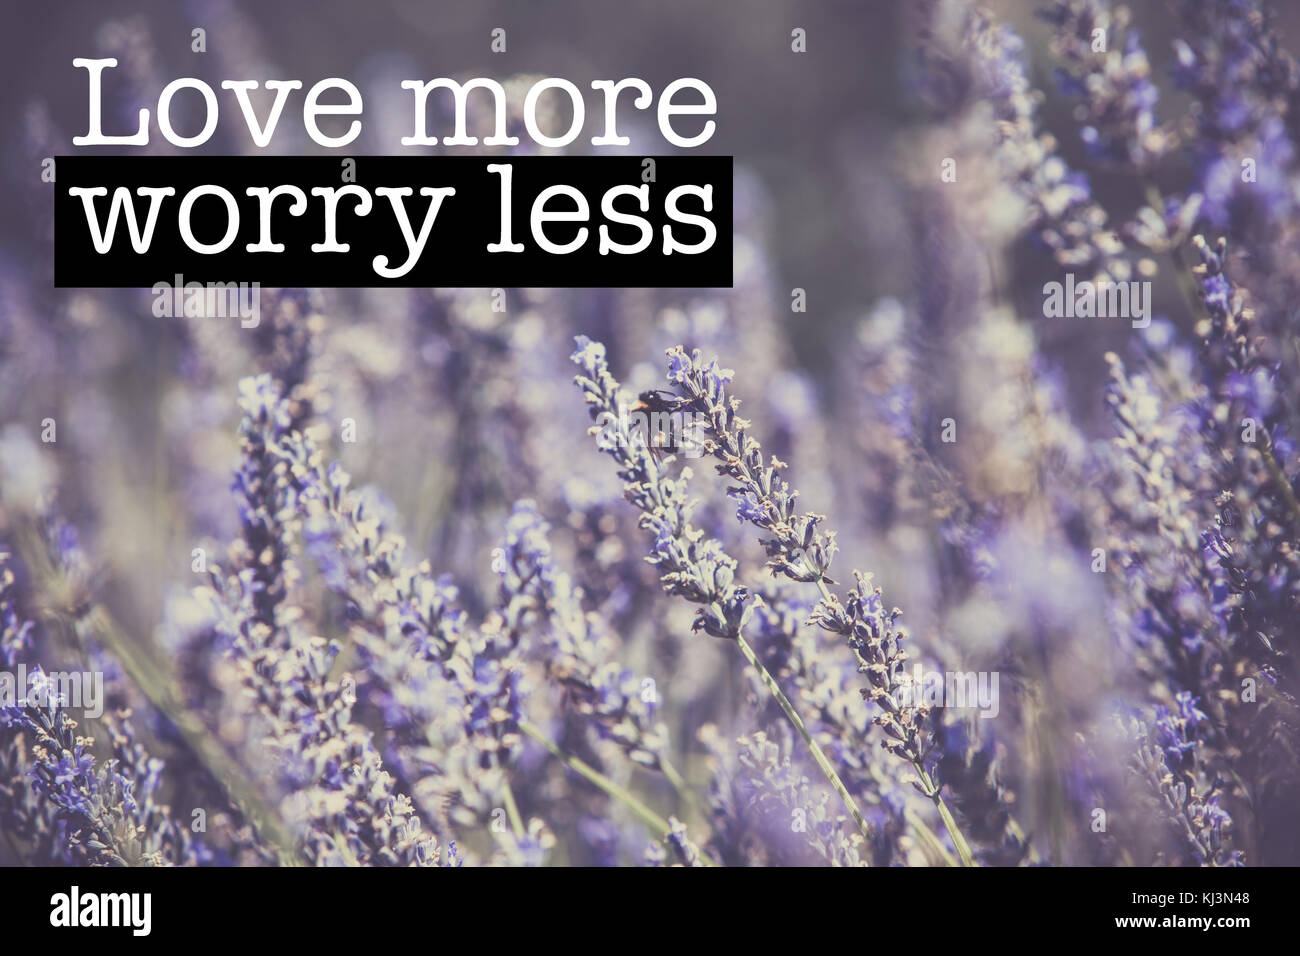 Inspirational motivation Zitat mit dem Satz "Liebe mehr weniger Sorgen", blühende Lavendel Blumen Hintergrund Stockfoto